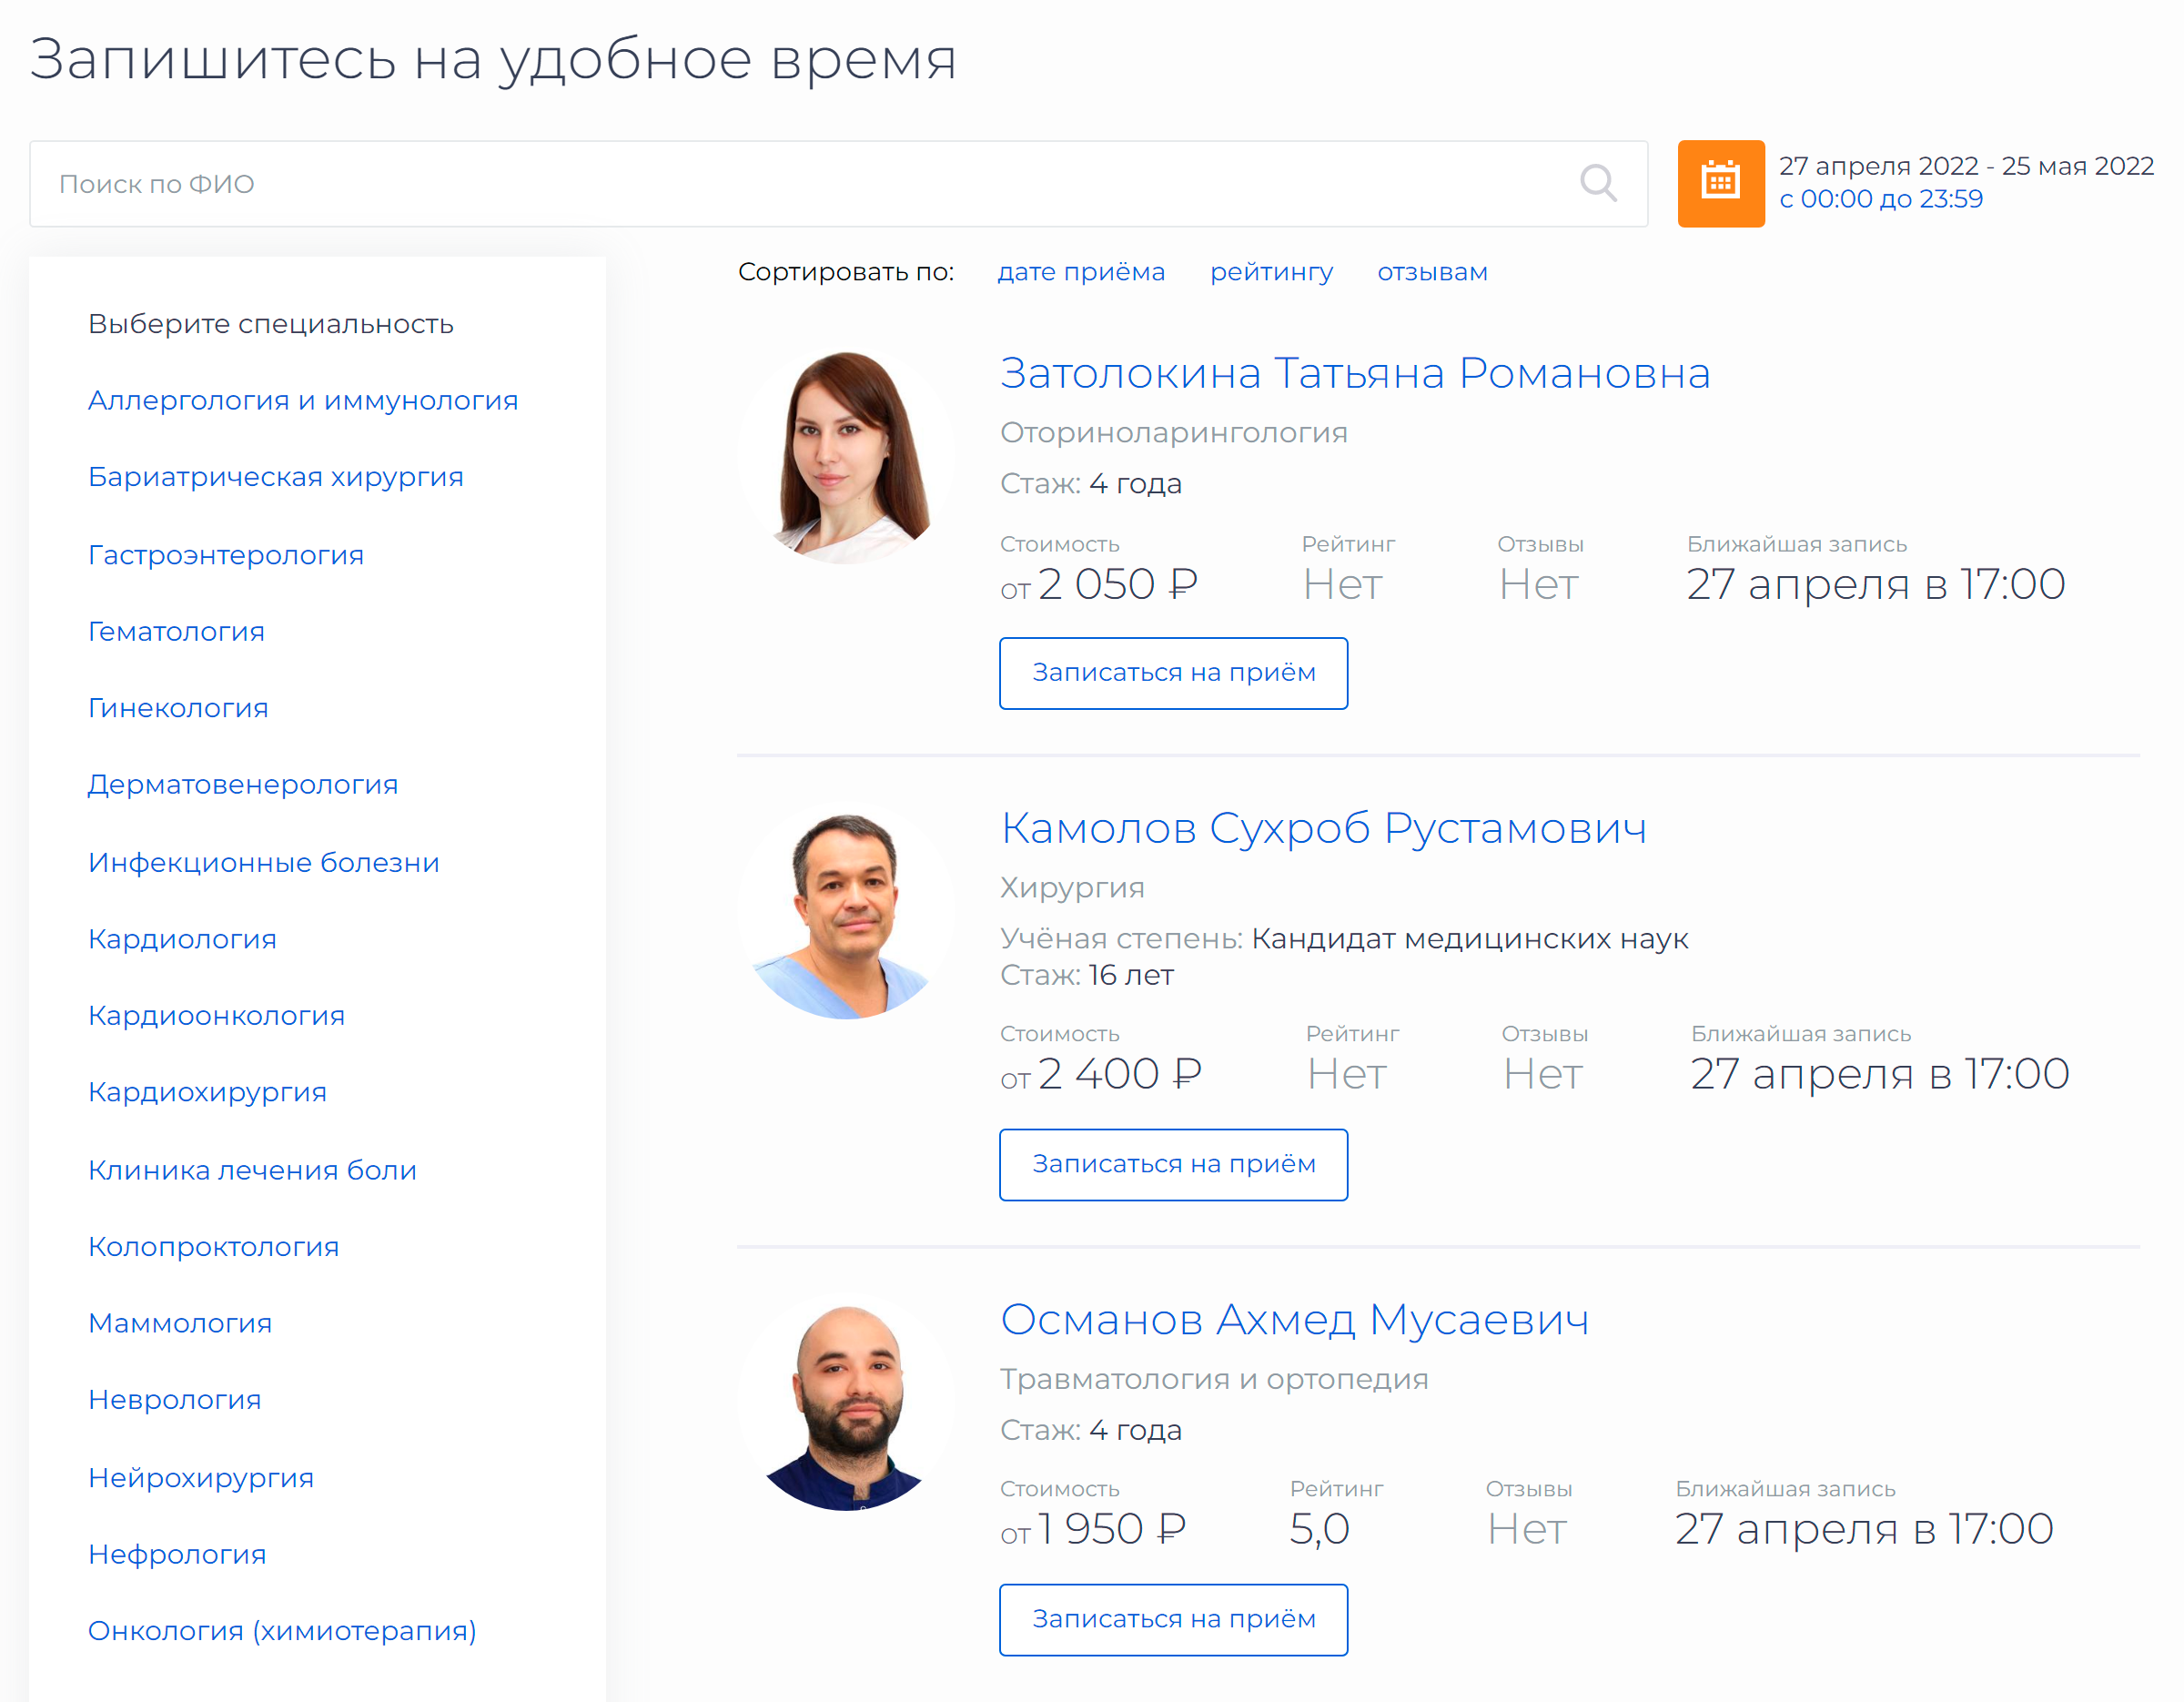 На телемедицинском сайте ФНКЦ большой выбор врачей разных специальностей, есть возможность выбрать день и время консультации. Прежде чем записаться, нужно зарегистрироваться в личном кабинете. Цены на скриншоте — за 2022 год, сейчас онлайн-прием врача может стоить дороже. Источник: telemed.fnkc-fmba.ru